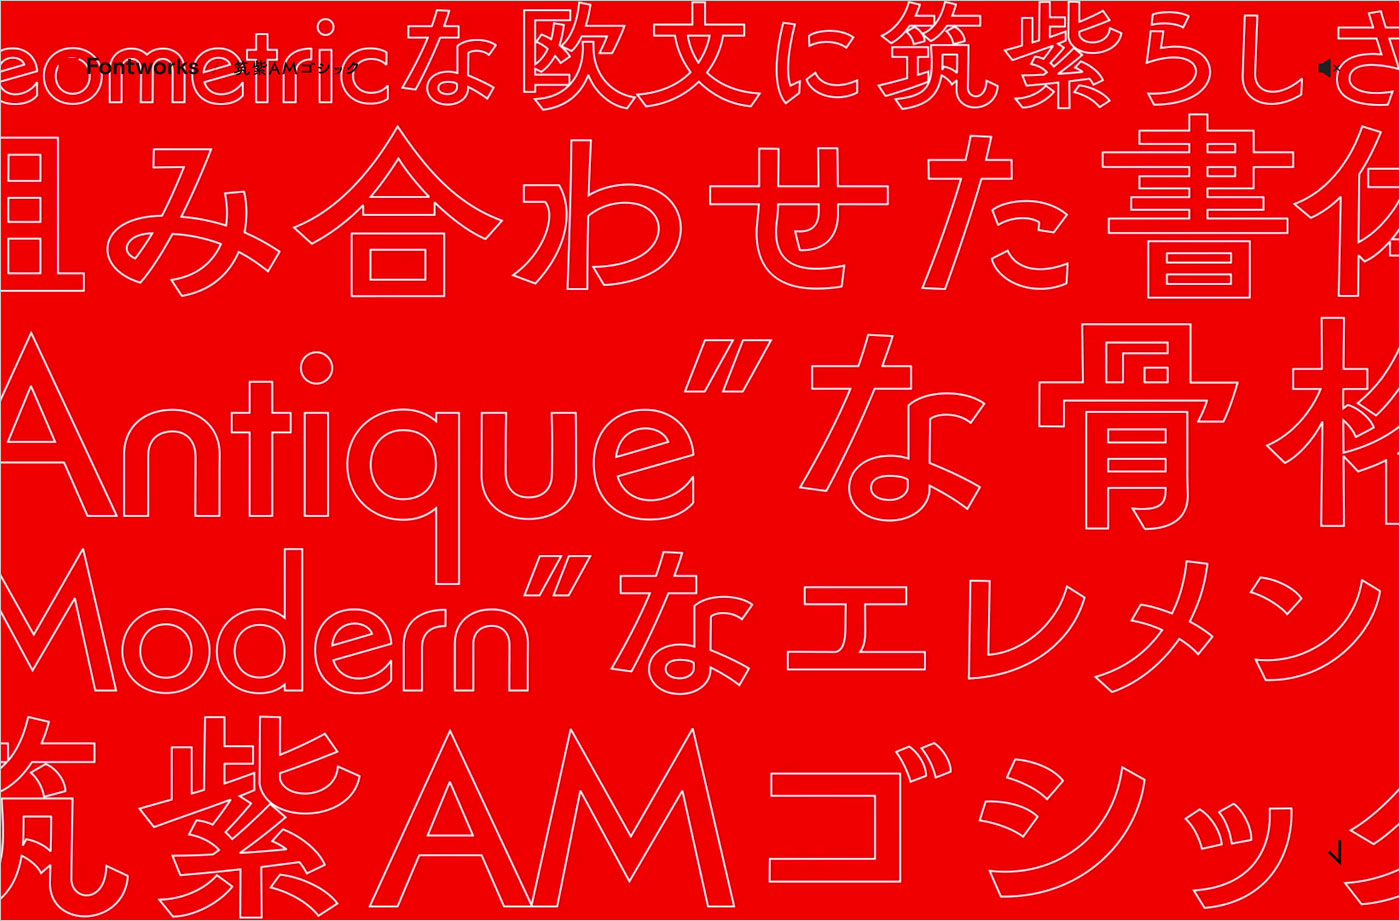 【2022年新書体】筑紫AMゴシック | Fontworksウェブサイトの画面キャプチャ画像